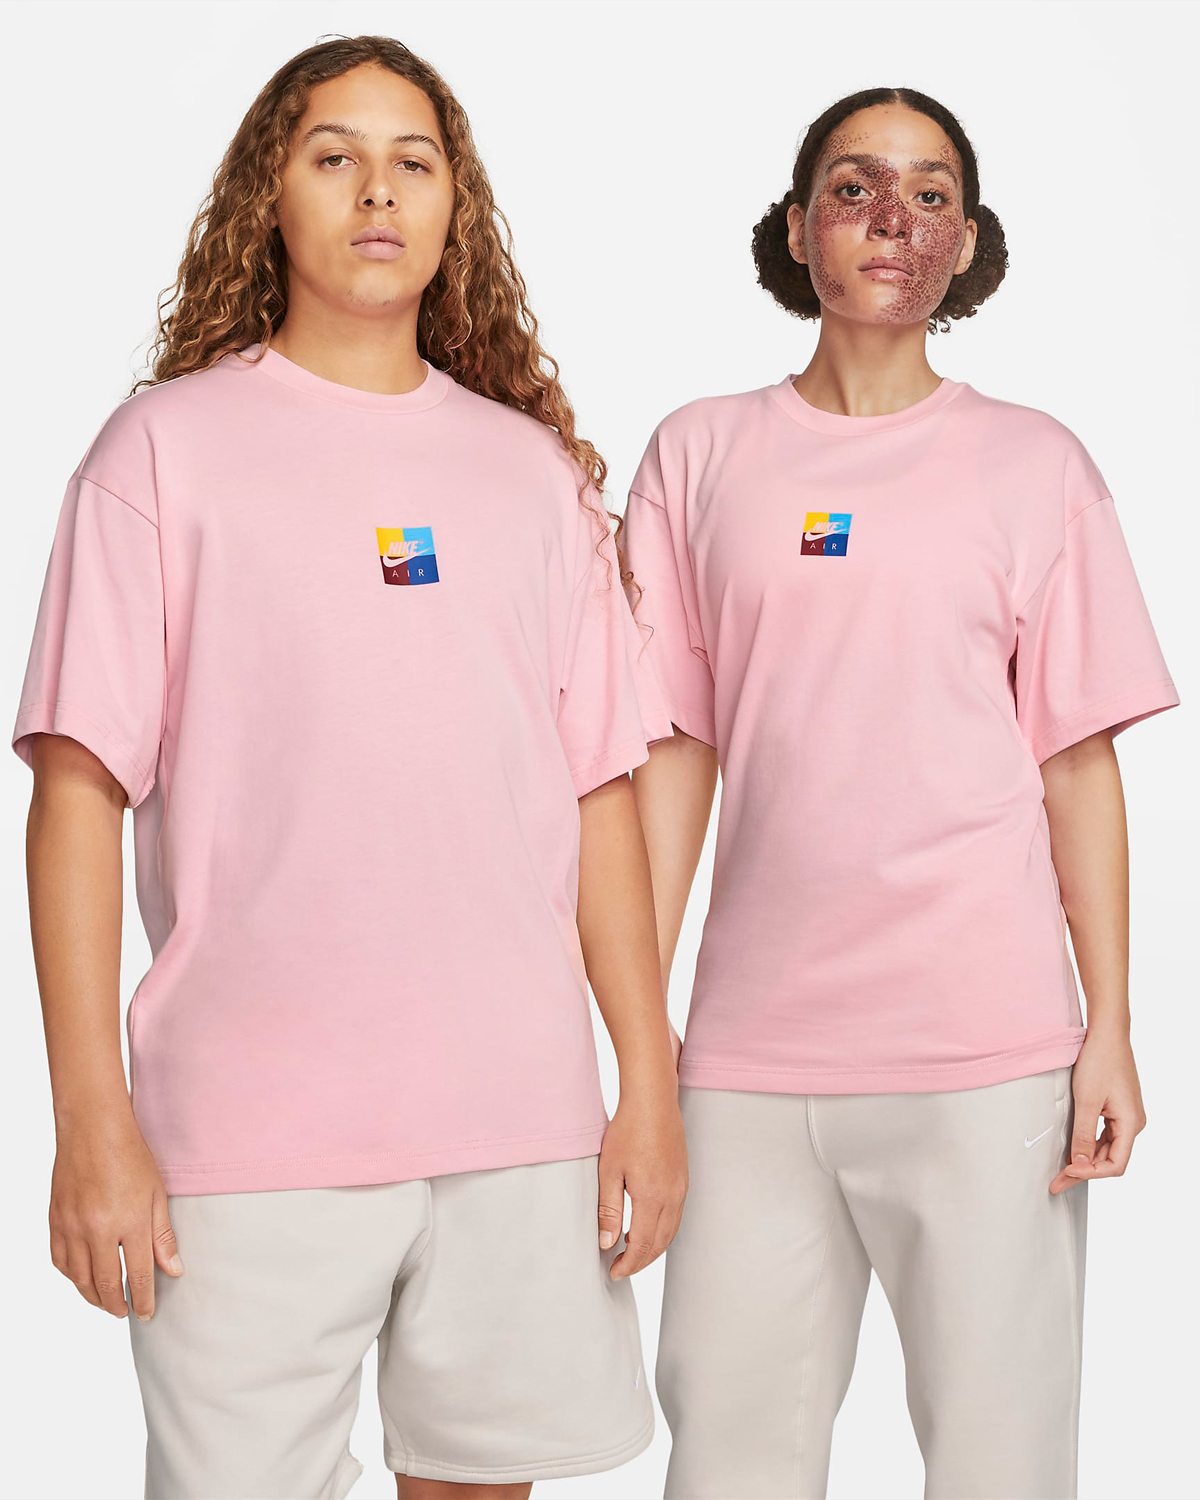 Nike-Air-Goddess-T-Shirt-Medium-Soft-Pink-1